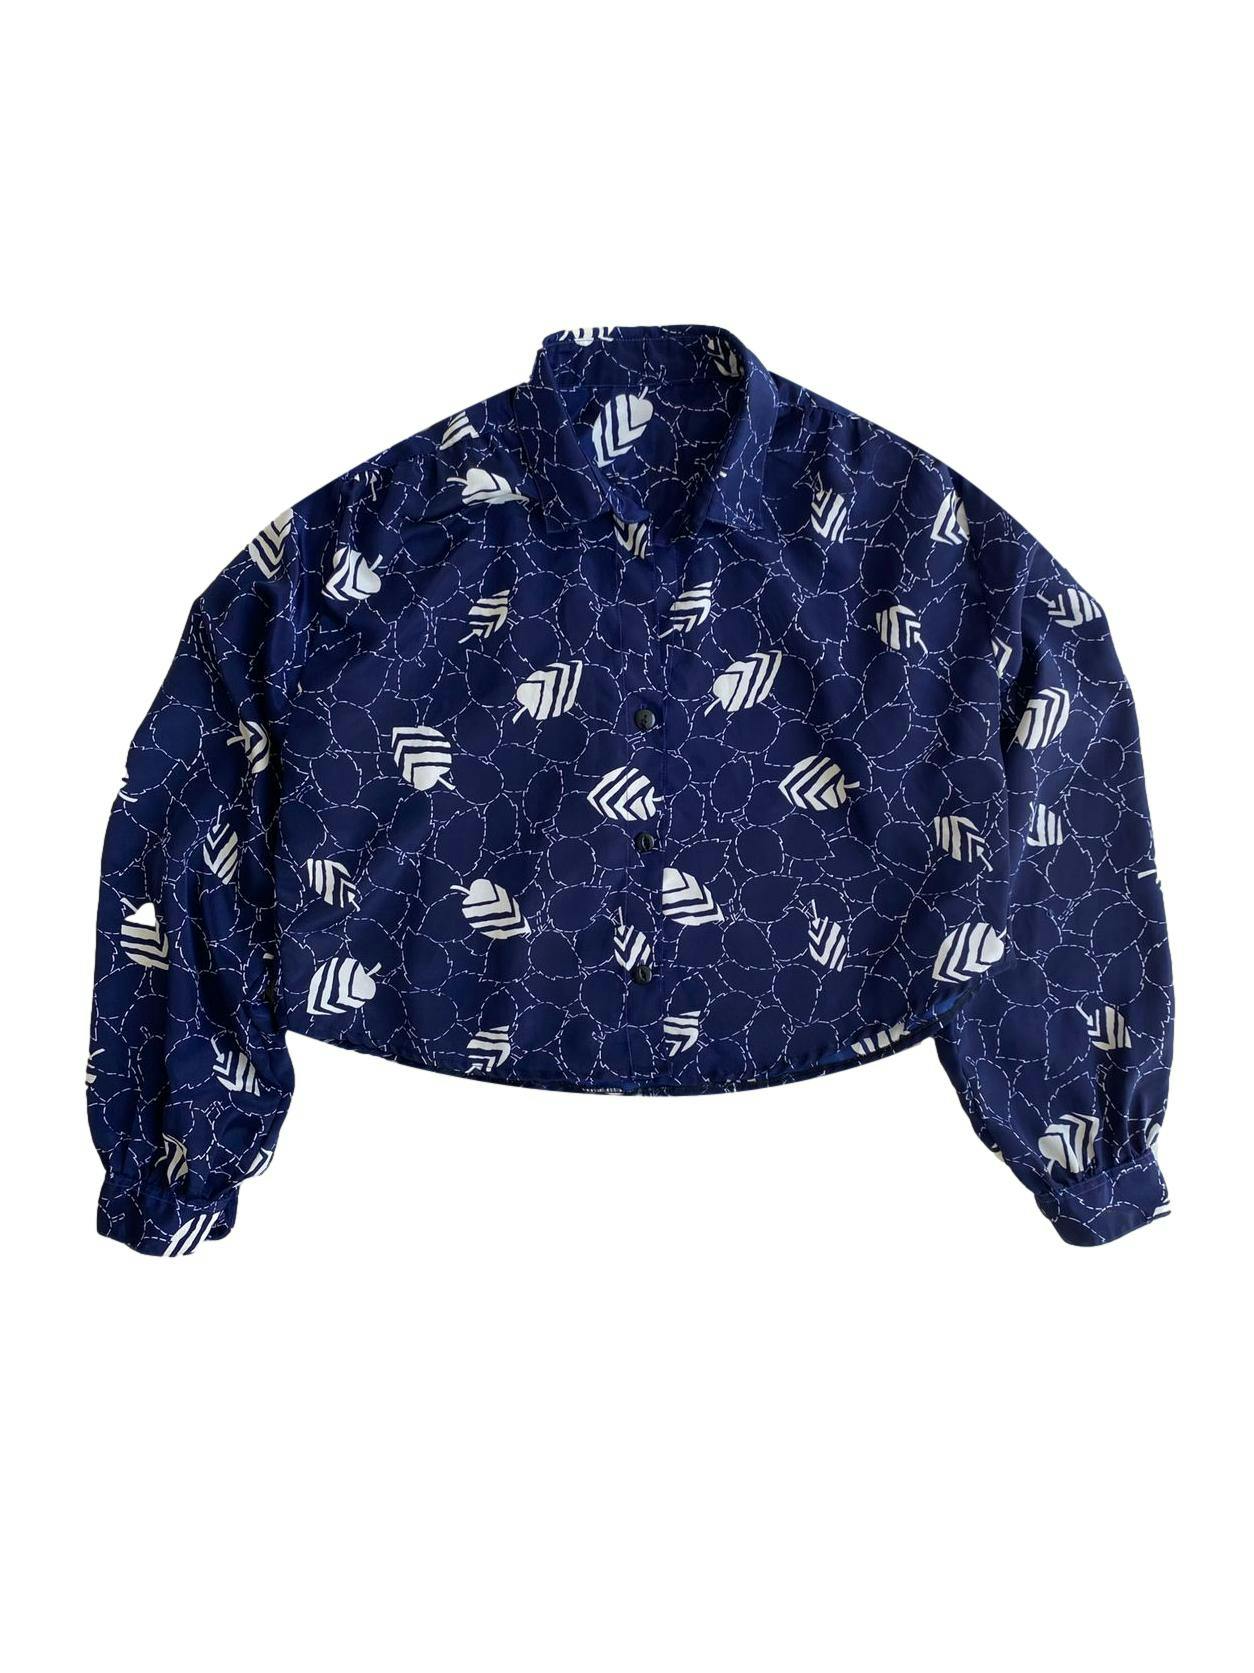 Blusa vintage azul marino con hojas blancas, tiene botones en los puños y es ligeramente crop. Busto: 116cm, Largo: 42cm (tela no estira).